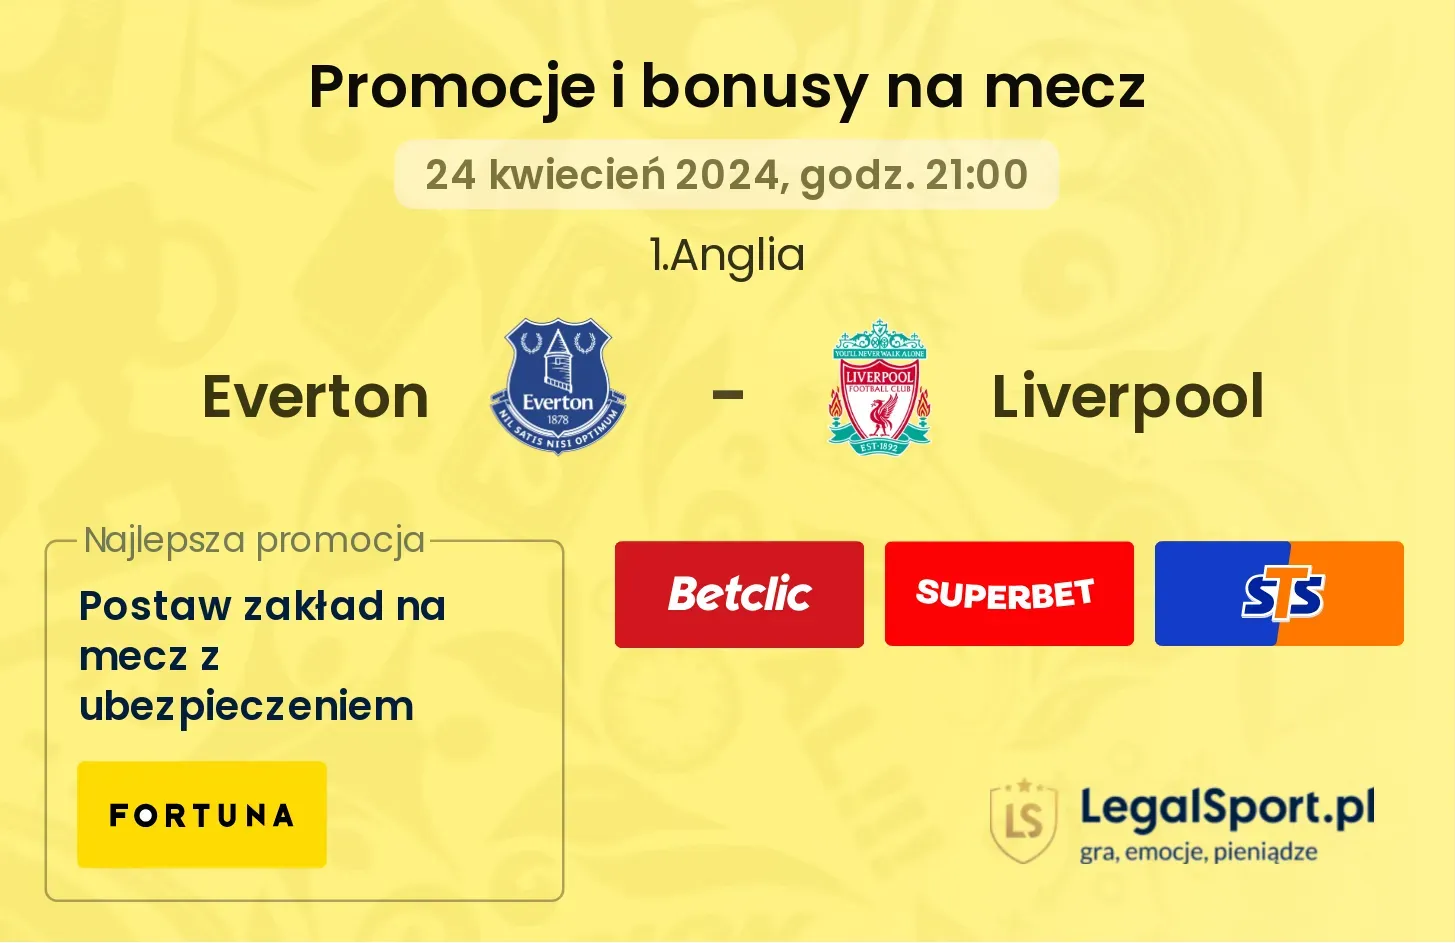 Everton - Liverpool promocje bonusy na mecz